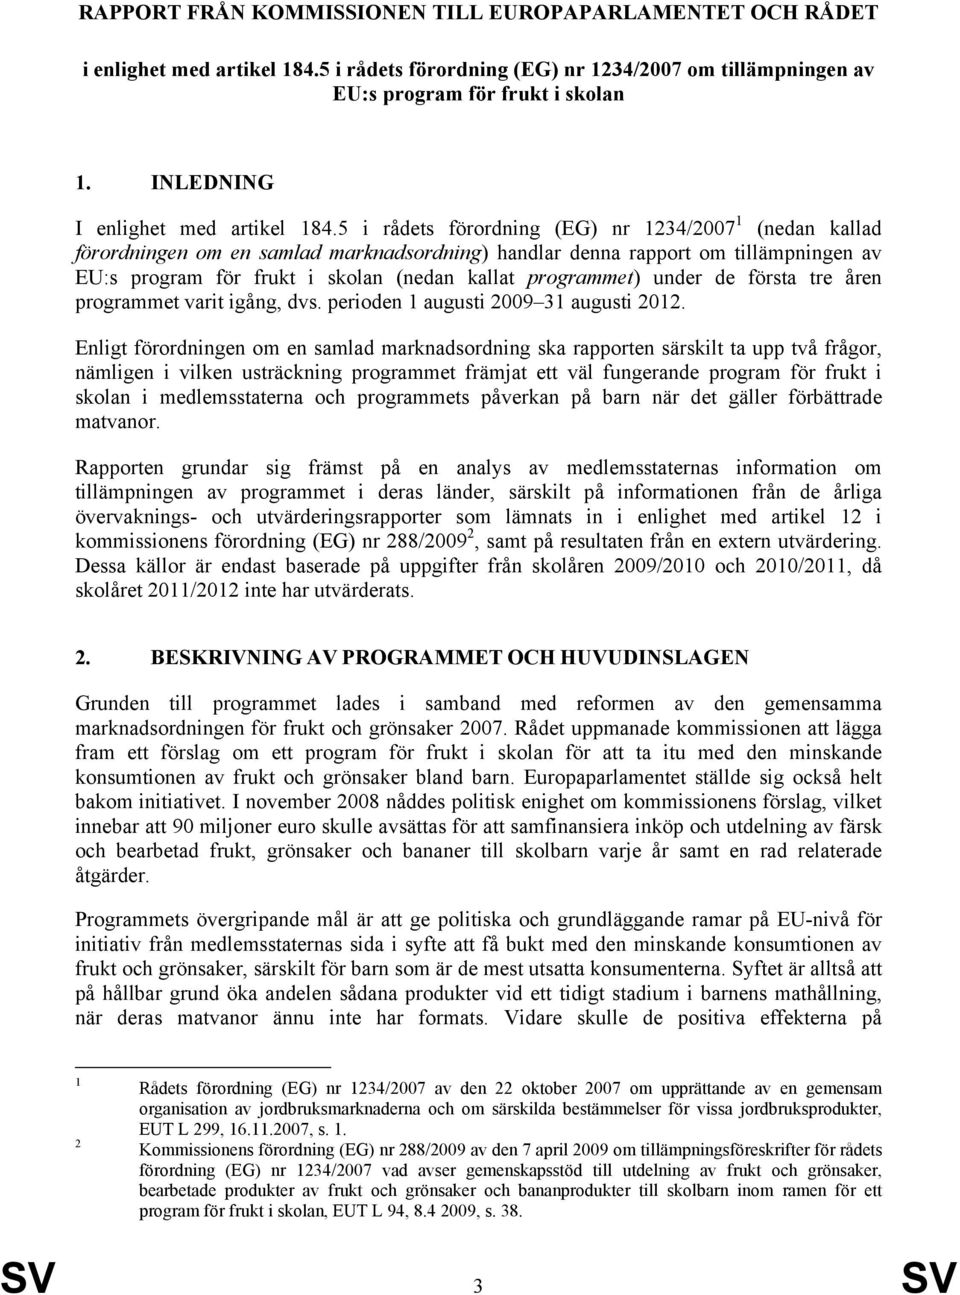 5 i rådets förordning (EG) nr 1234/2007 1 (nedan kallad förordningen om en samlad marknadsordning) handlar denna rapport om tillämpningen av EU:s program för frukt i skolan (nedan kallat programmet)